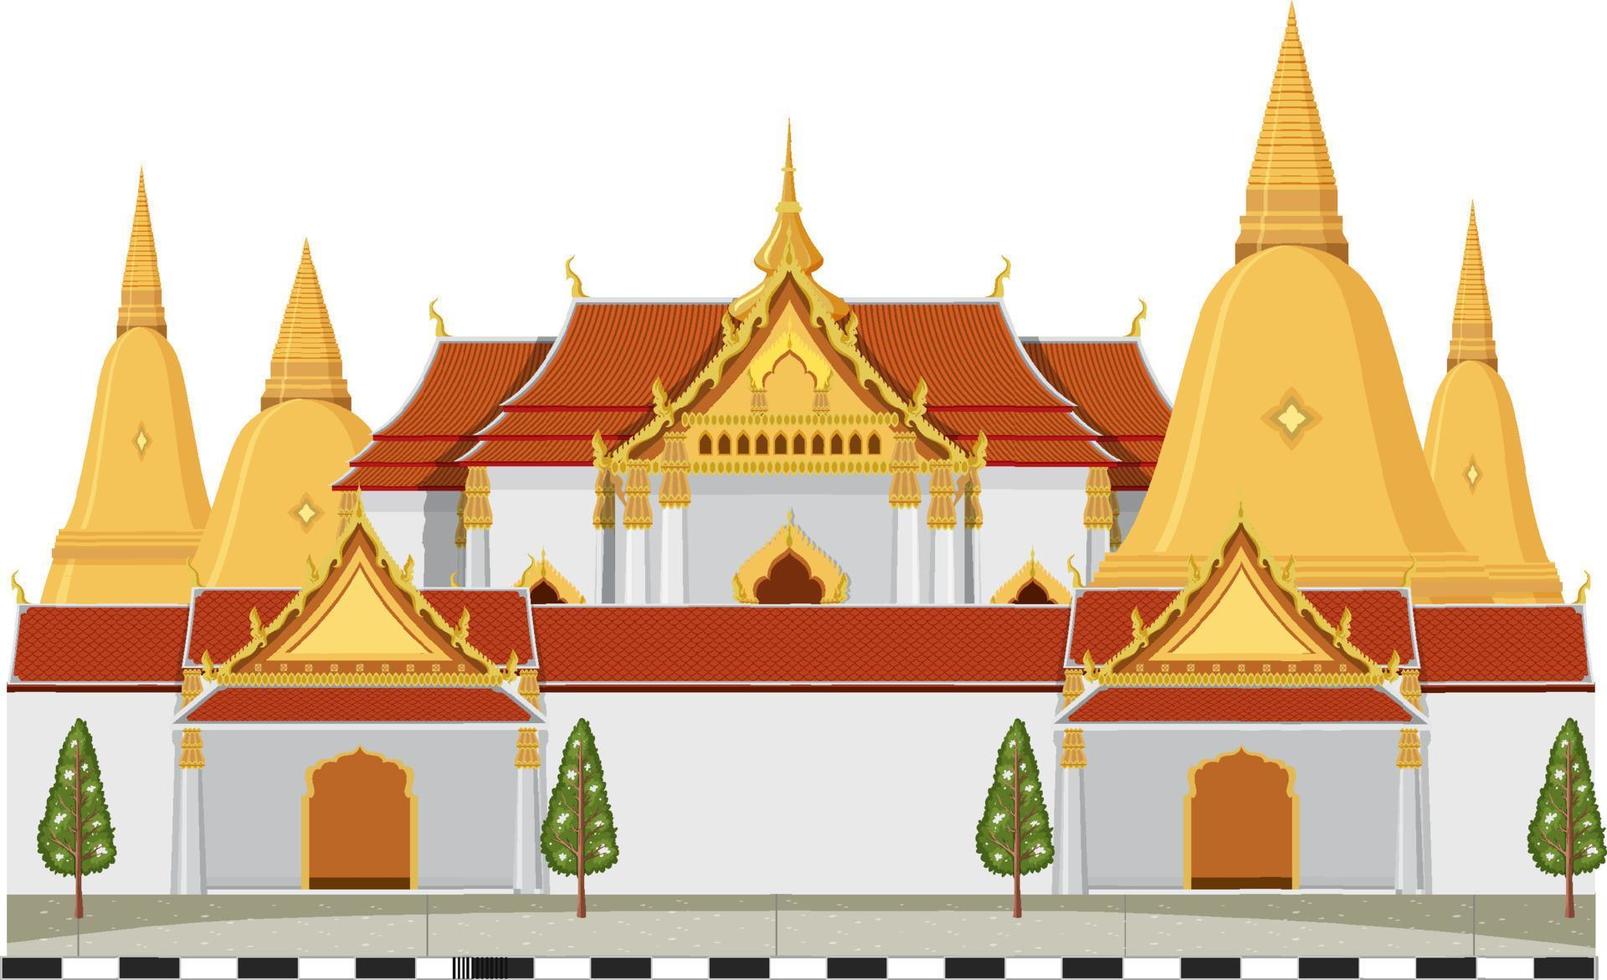 thailand ikonischer hintergrund der touristenattraktion vektor